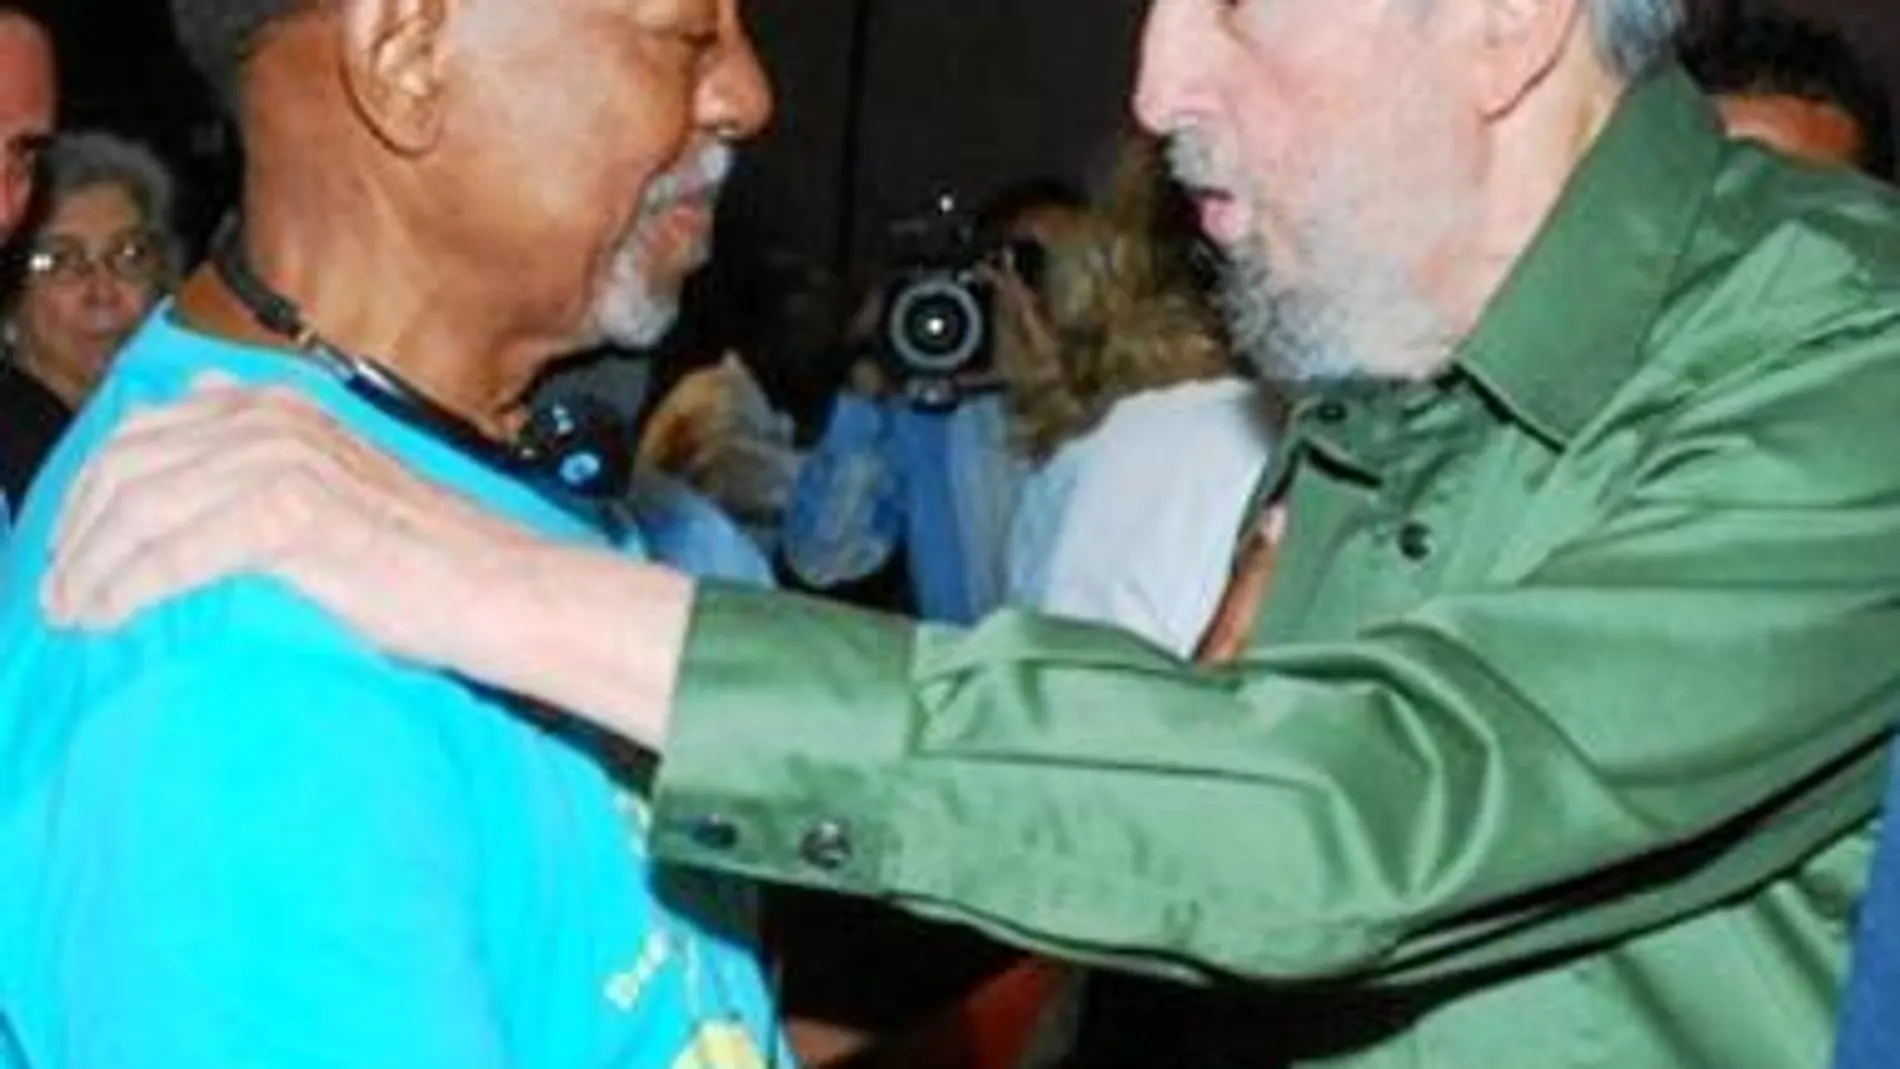 Fidel regresa para frenar cualquier reforma en Cuba